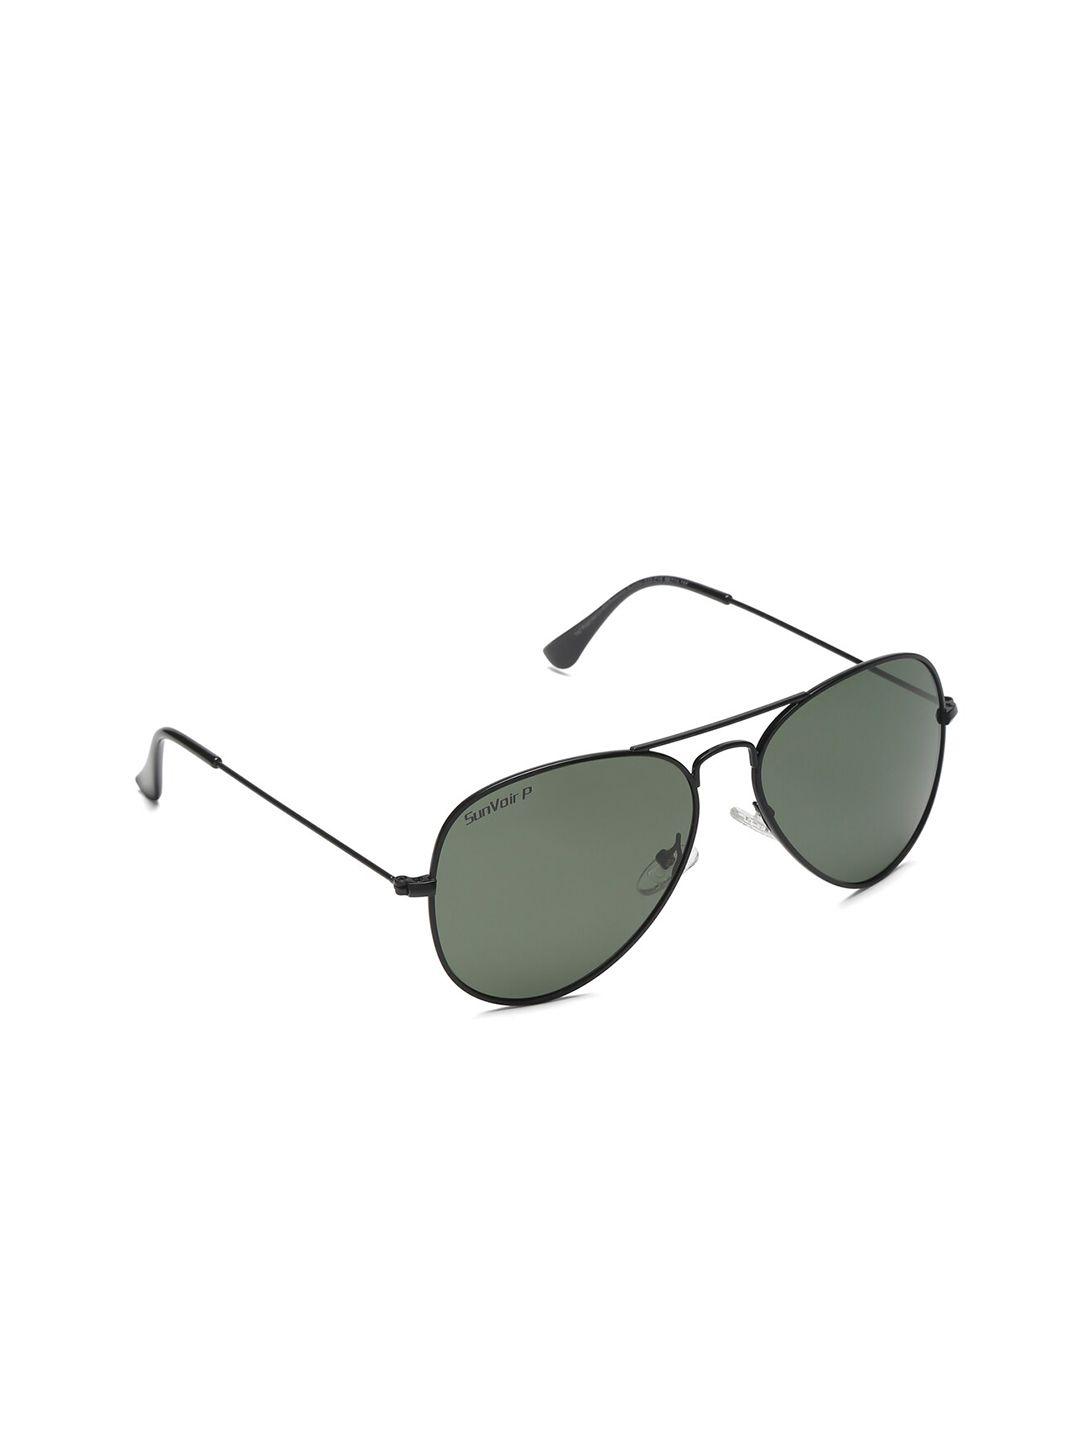 sunnies full rim aviator sunglasses with polarised lens sunnies-020-c15